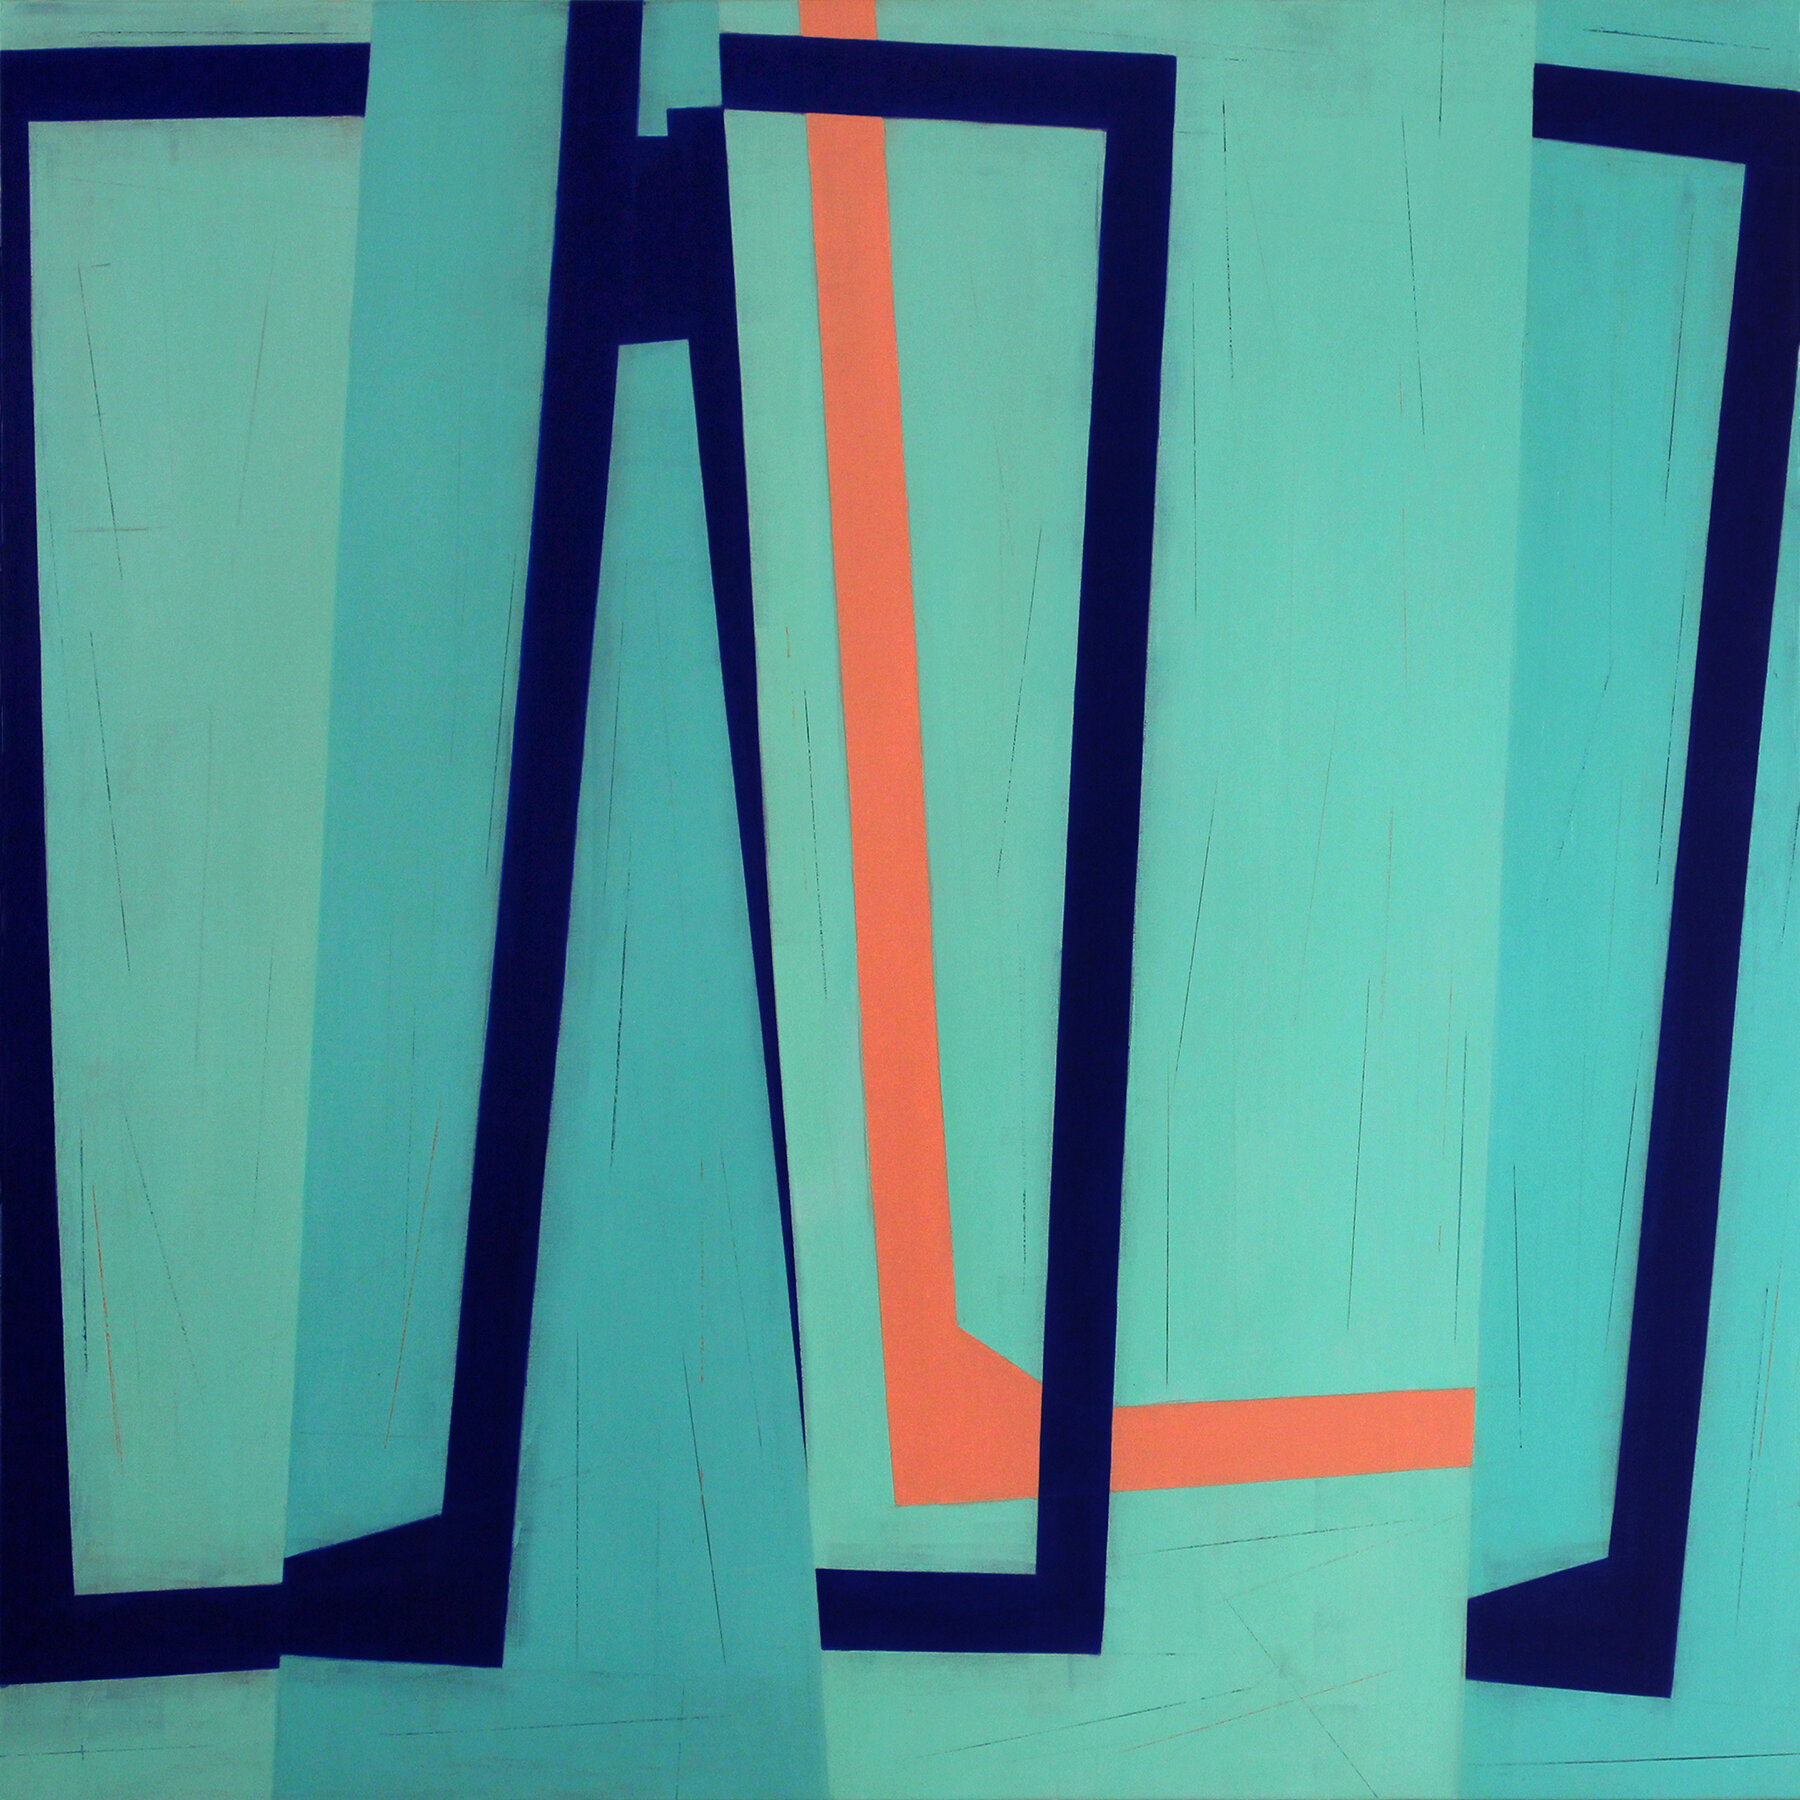 STEVEN BARIS | Jump Cut E12, 48 x 48 inches / 121.9 x 121.9 cm, oil on canvas, 2020